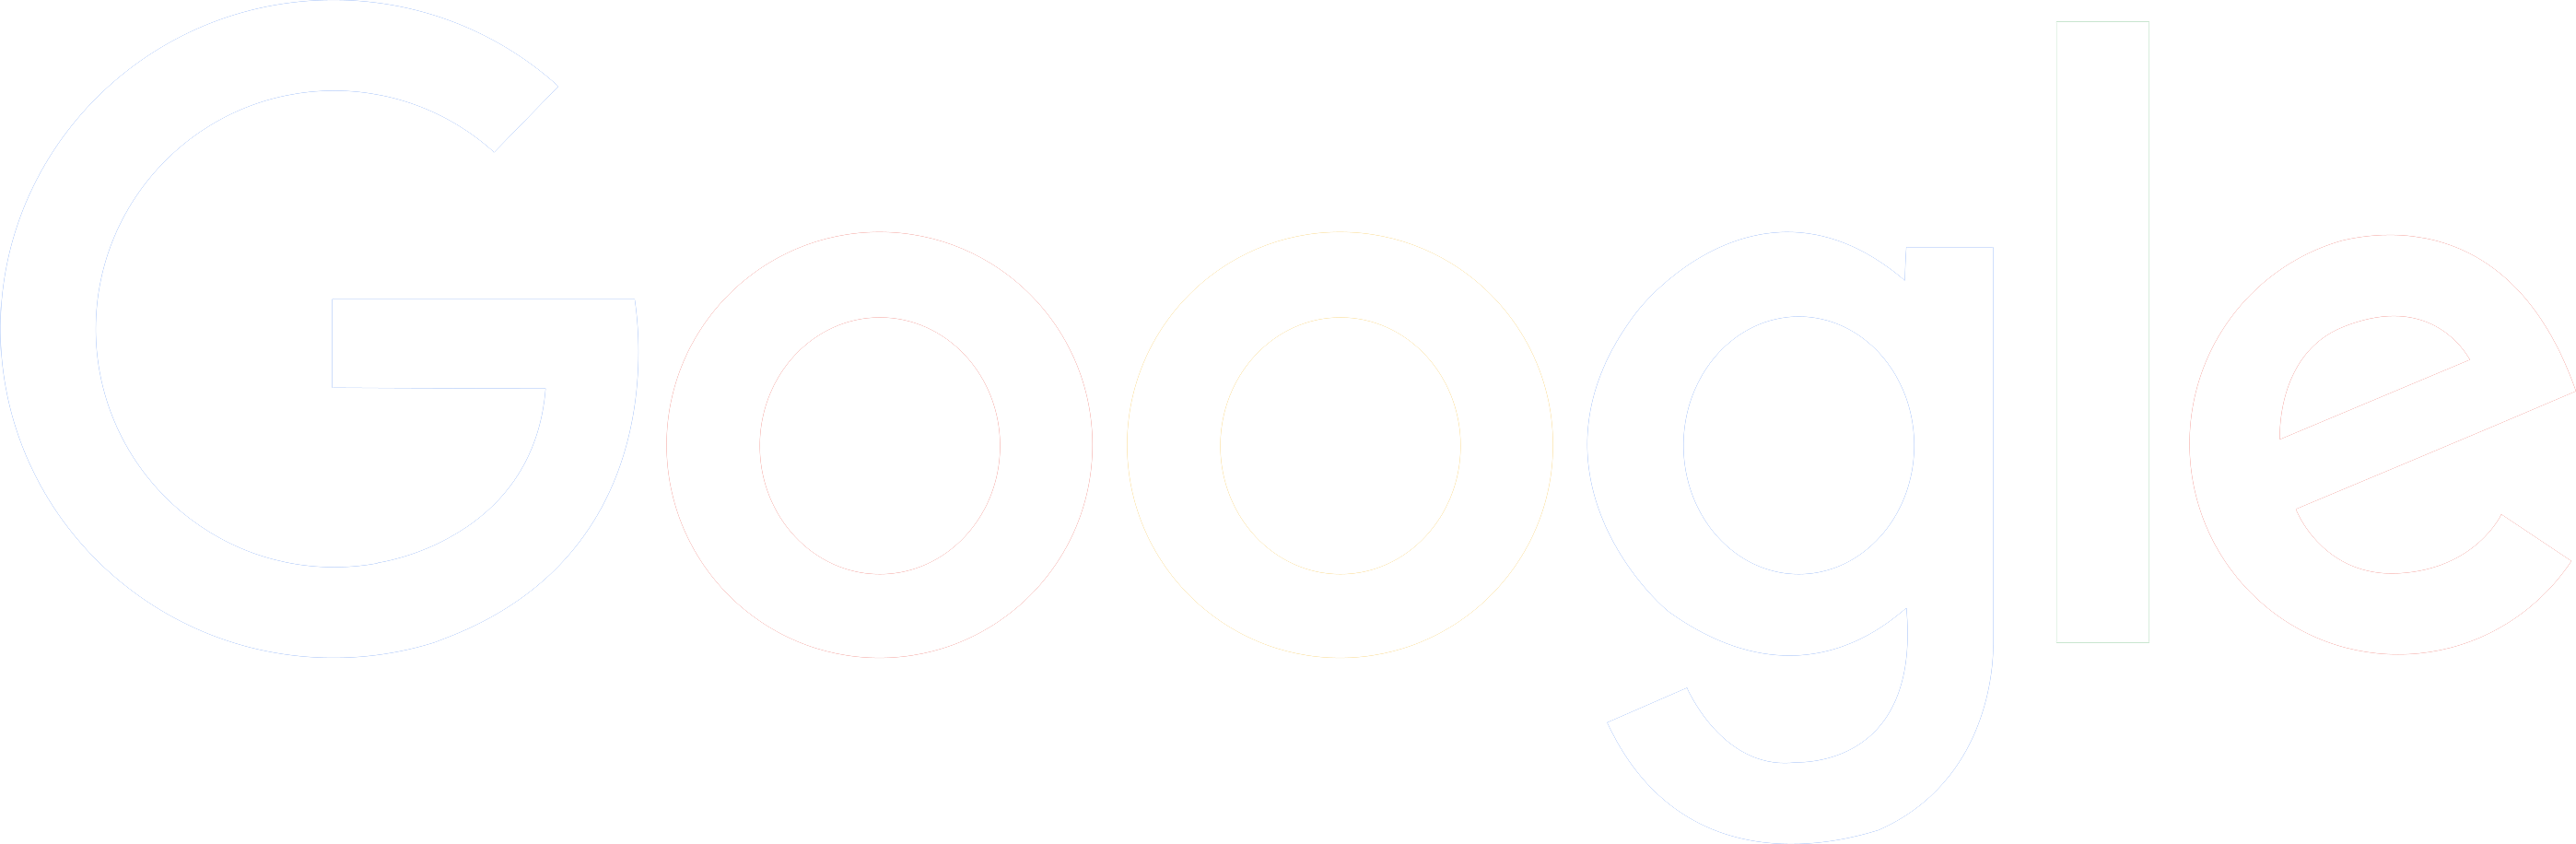 Google Logo PNG Free Download